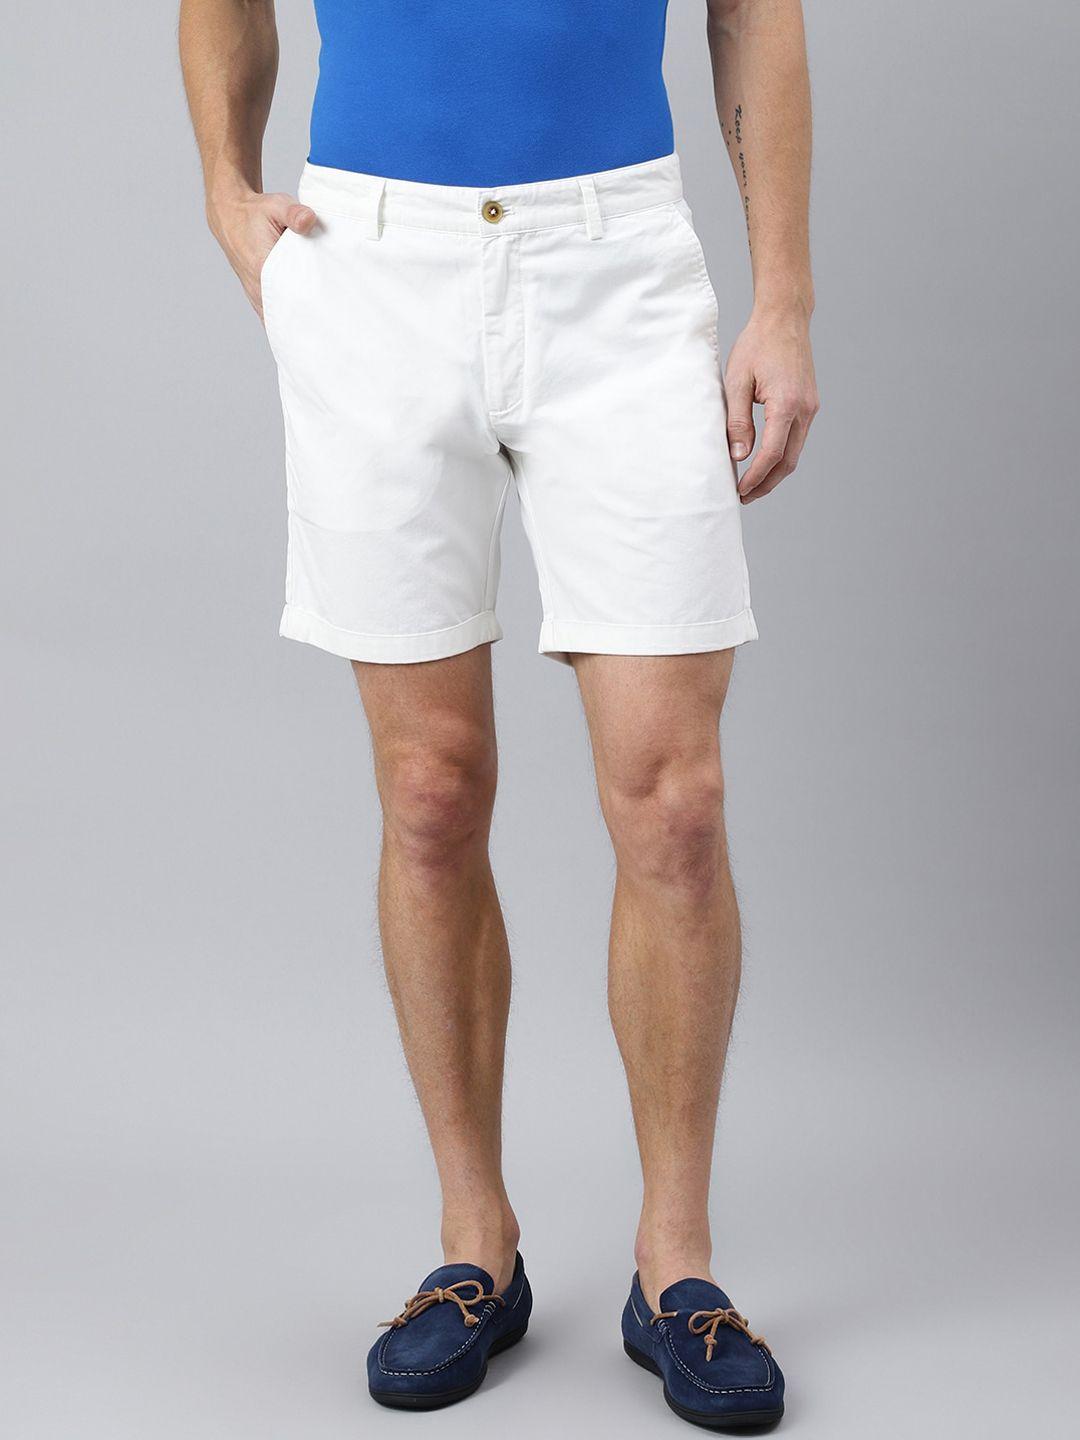 woodland-men-white-shorts